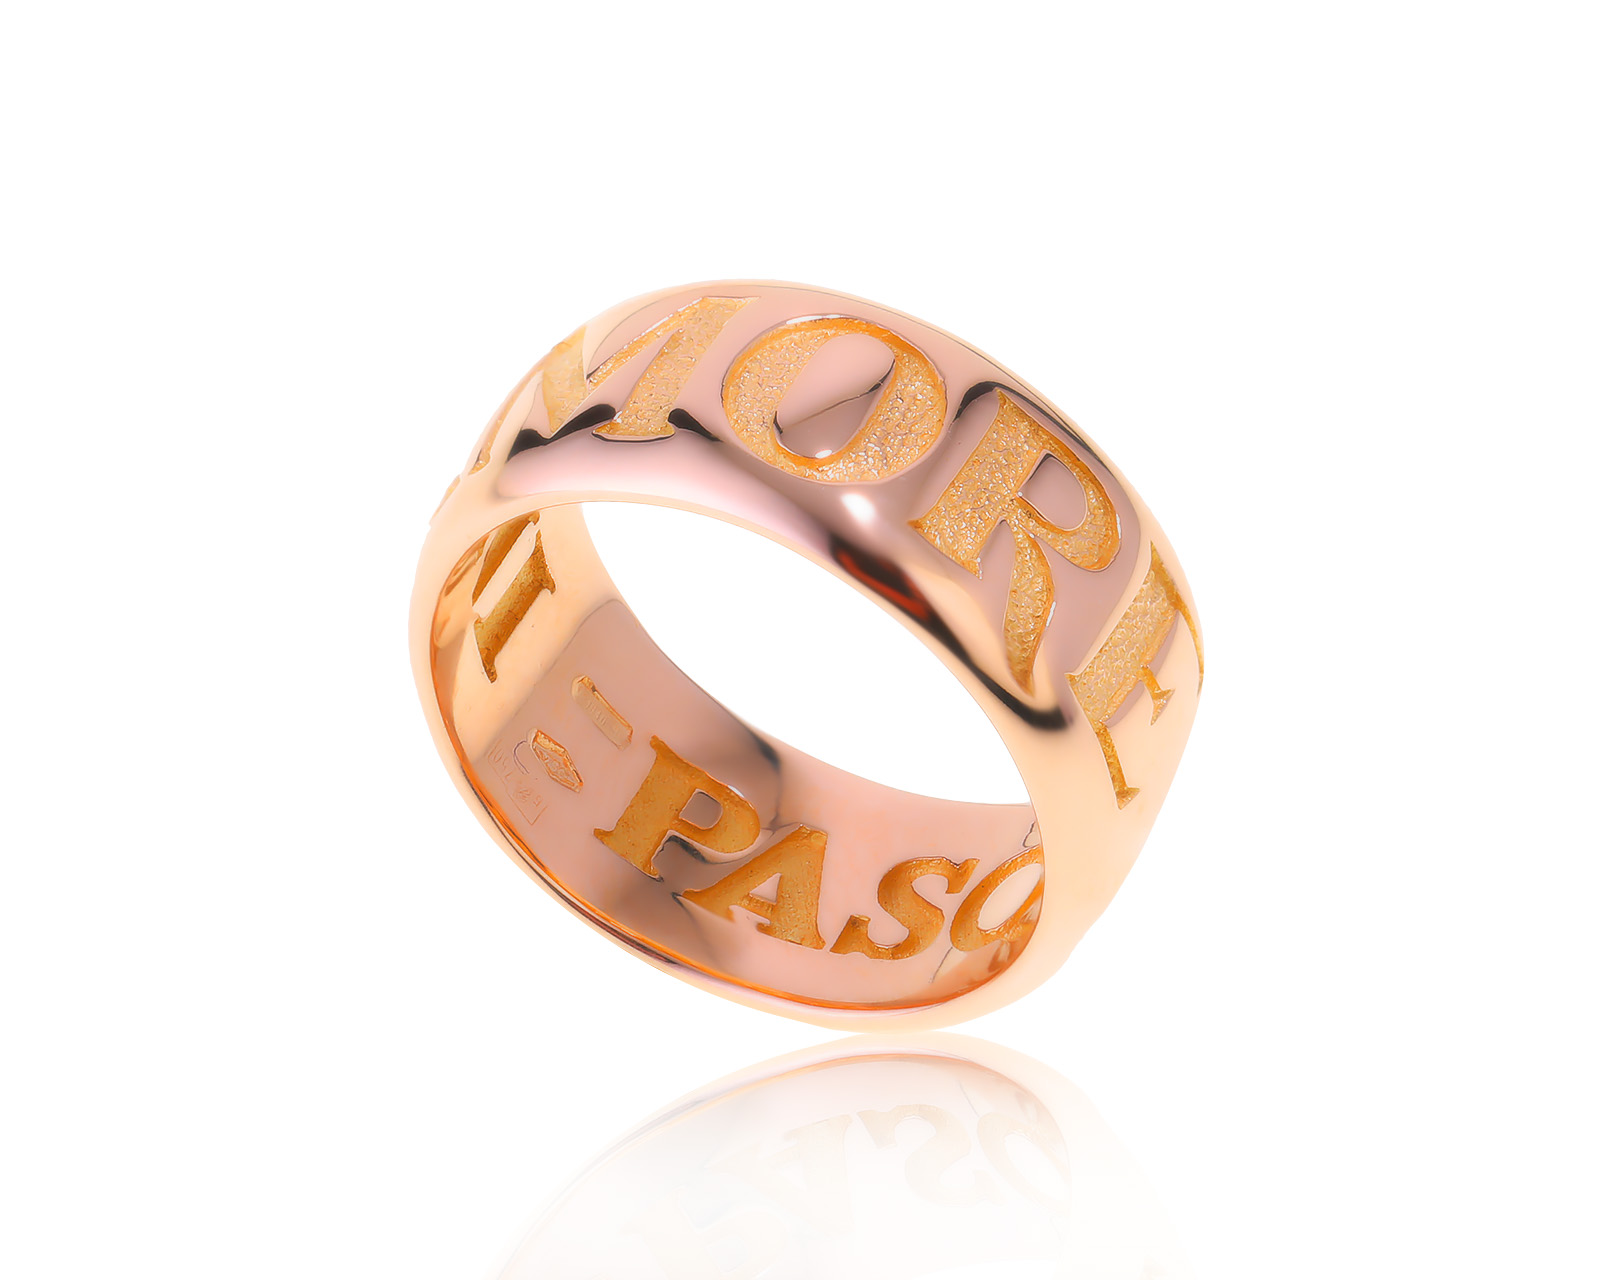 Оригинальное золотое кольцо Pasquale Bruni Amore